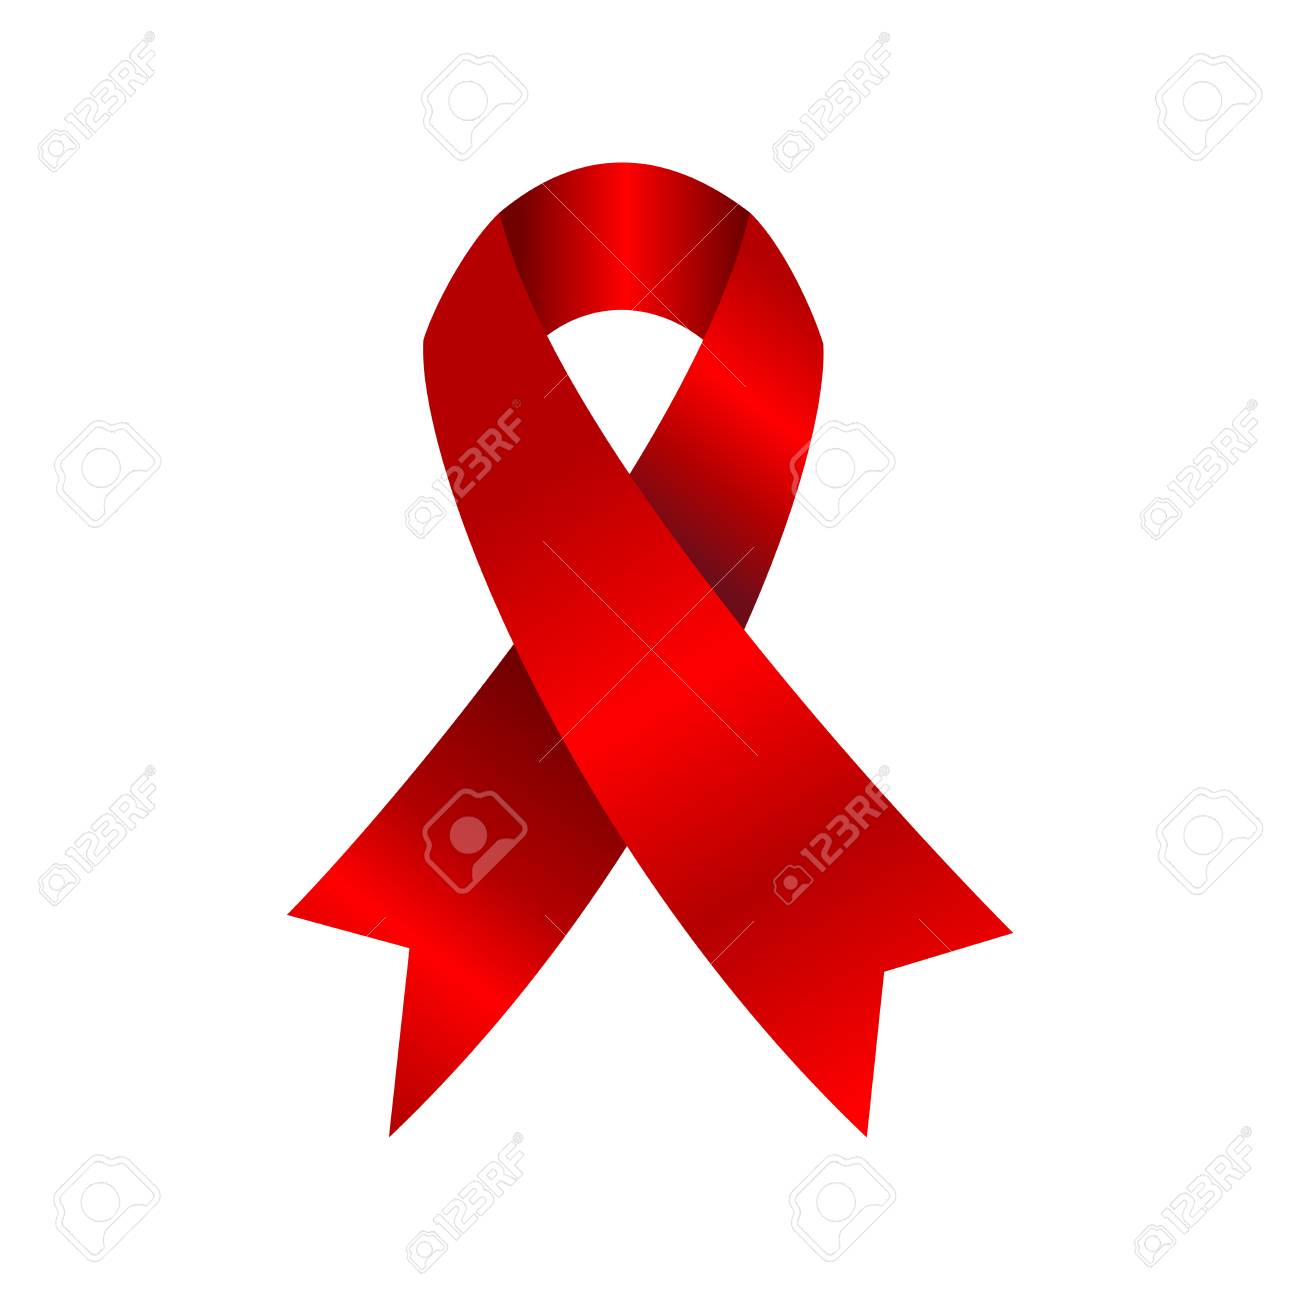 Lutte contre le sida : l'ONU appelle à appuyer le travail des organisations communautaires